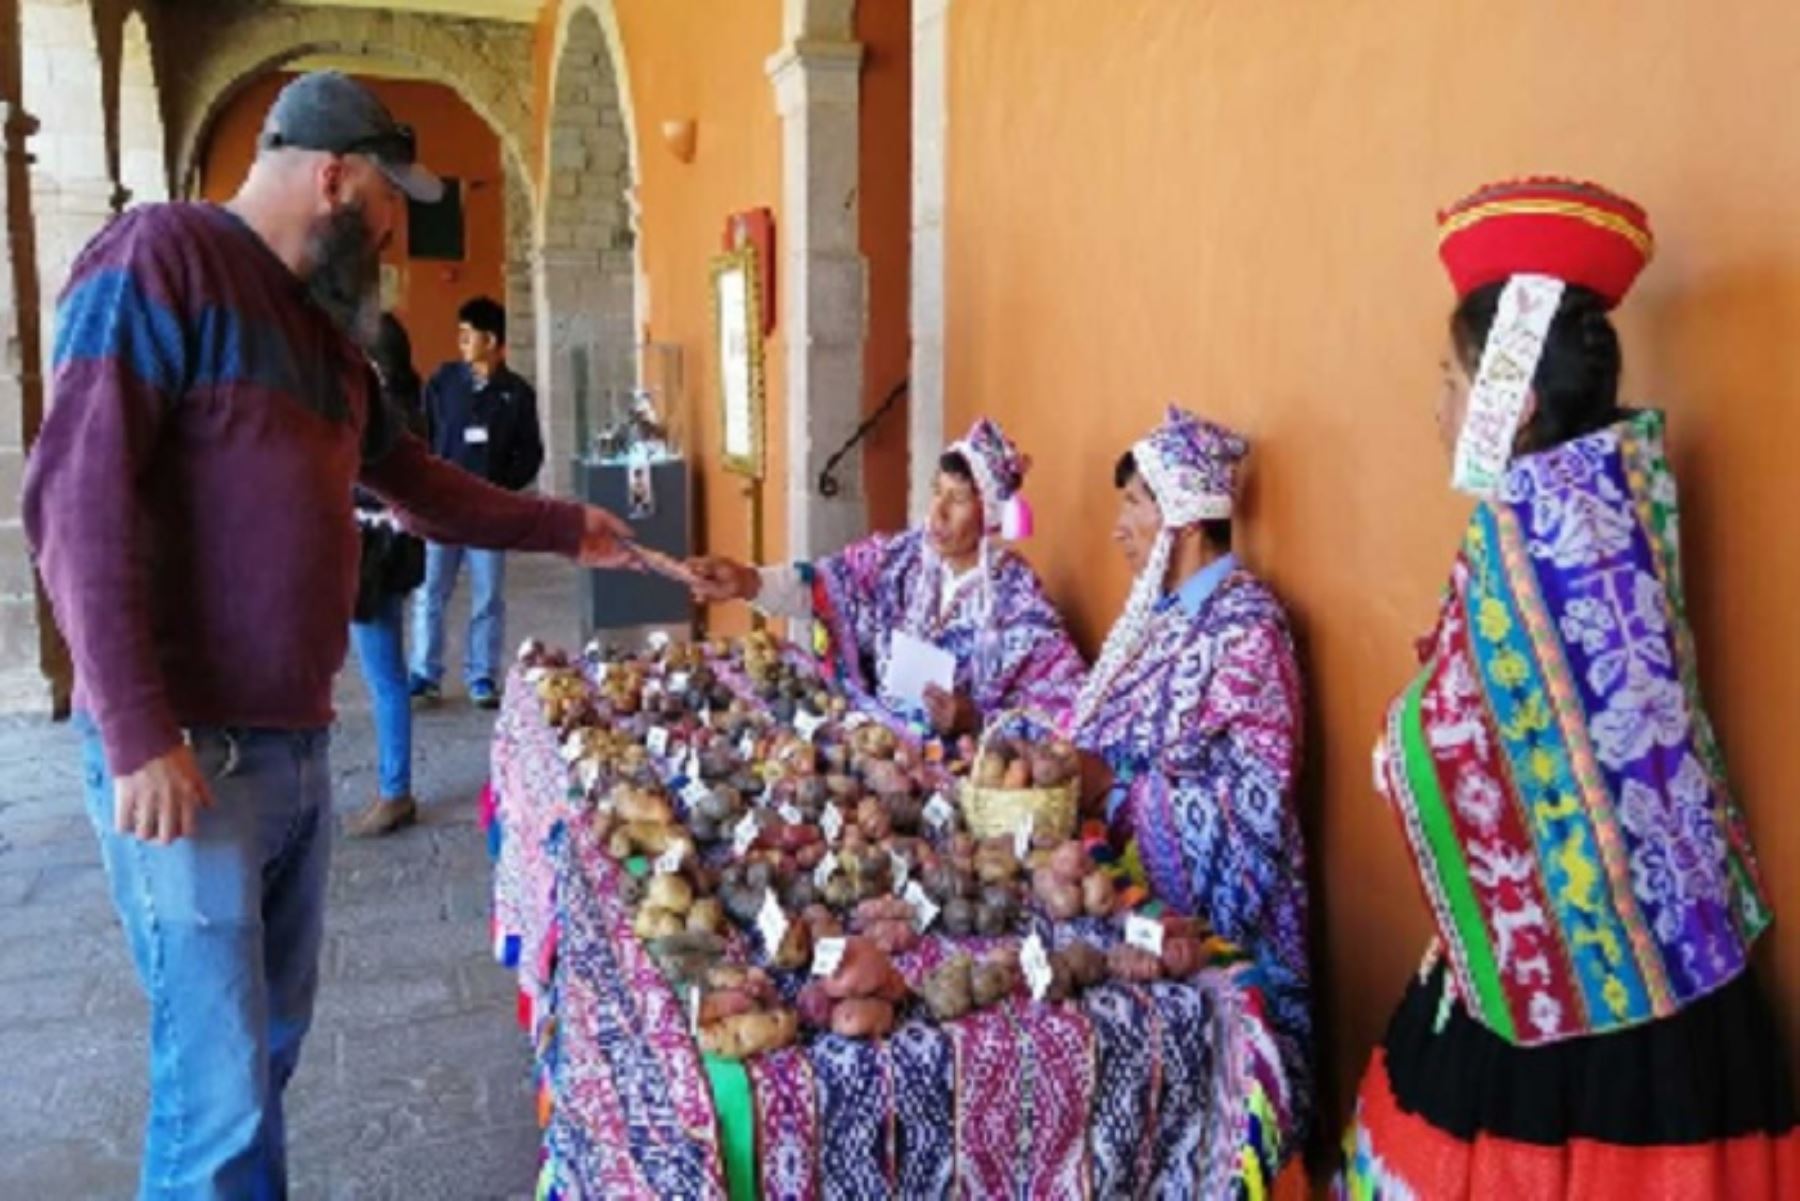 Comuneros de al menos nueve provincias de la región del Cusco exponen centenares de variedades de papá nativa que cultivan e ingresan al mercado local y cadenas hoteleras, en un conocido y lujoso hotel de la ciudad del Cusco.Foto: Percy Hurtado